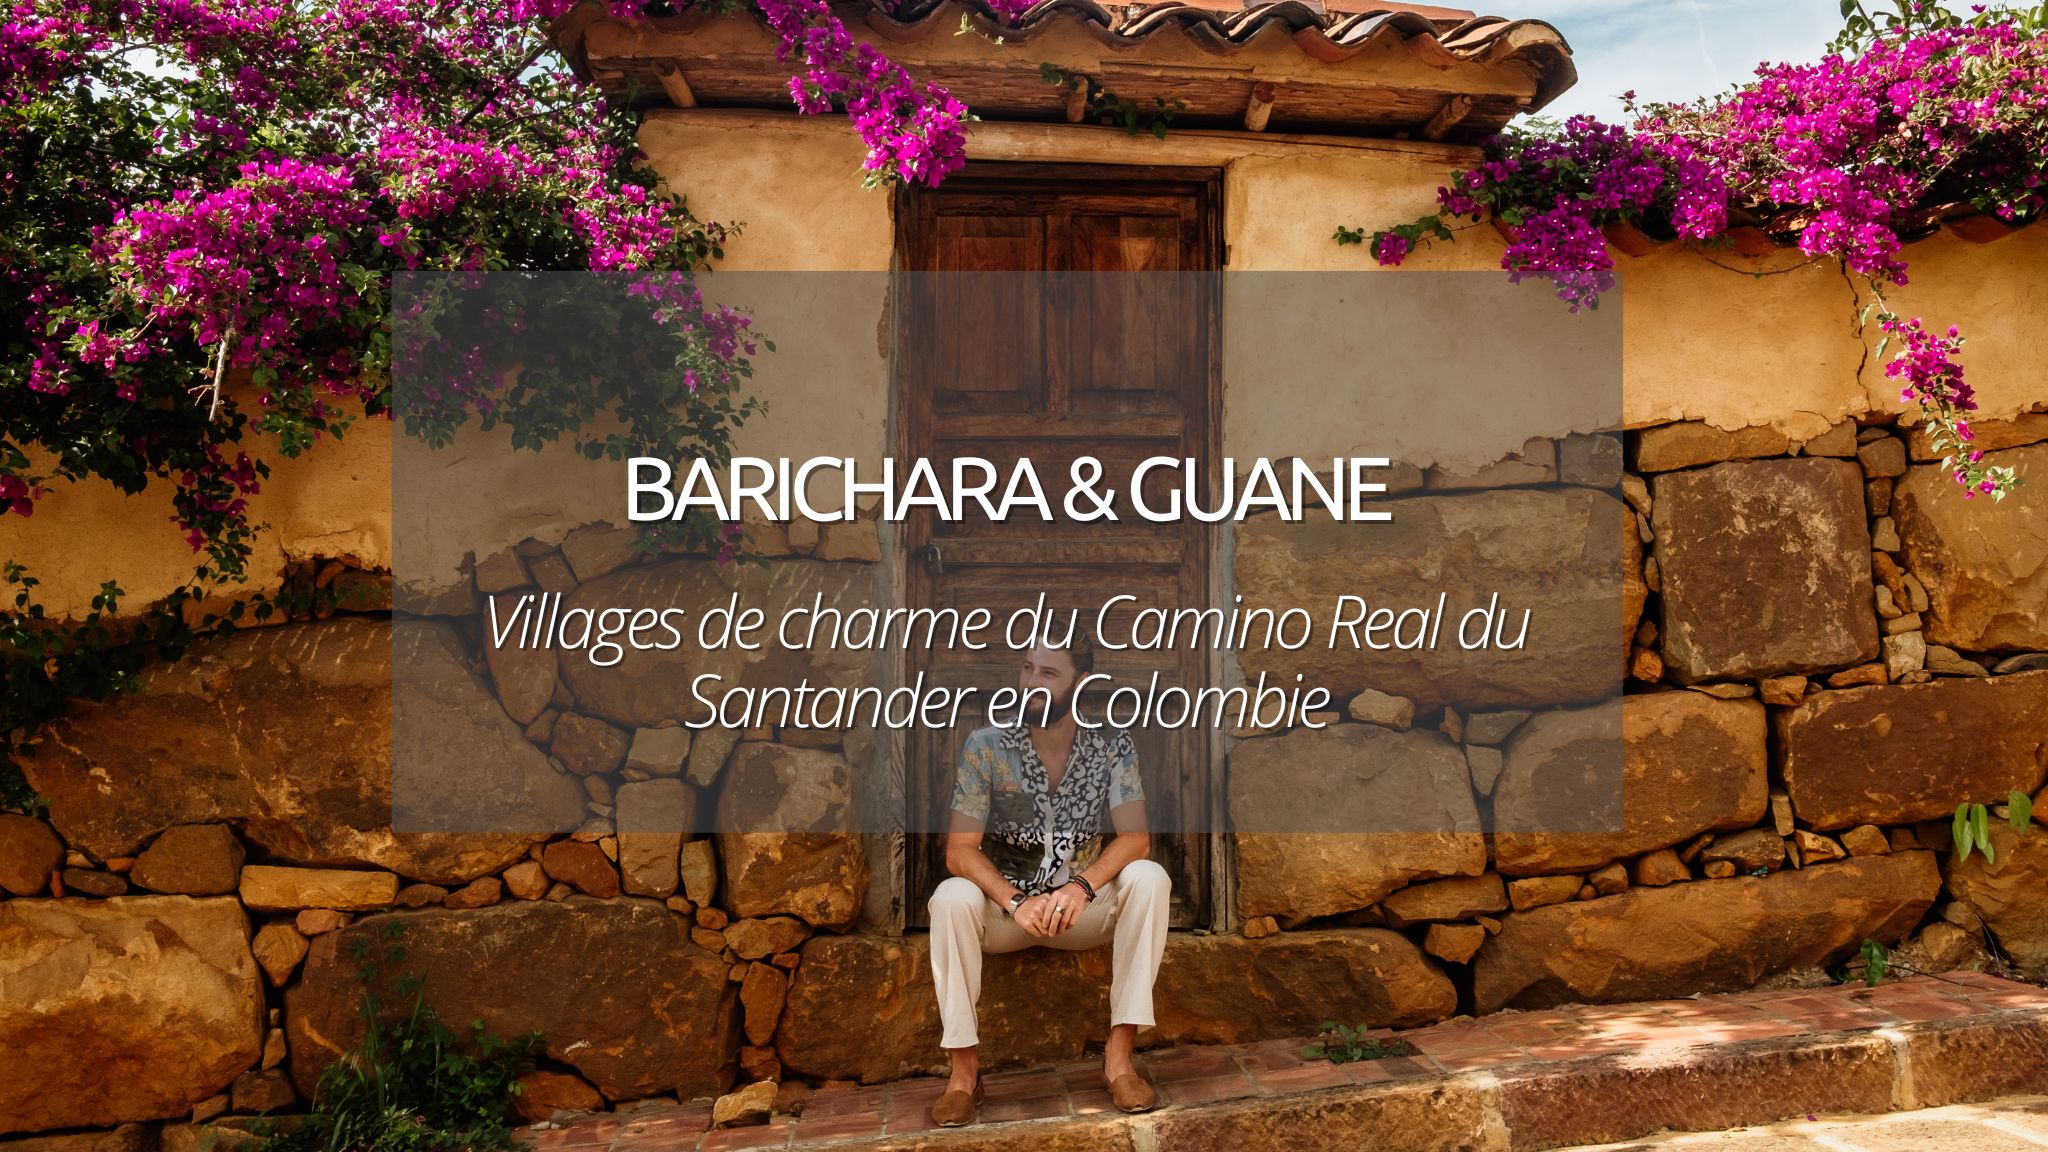 Barichara et Guane, villages étapes de charme du Camino Real en Colombie